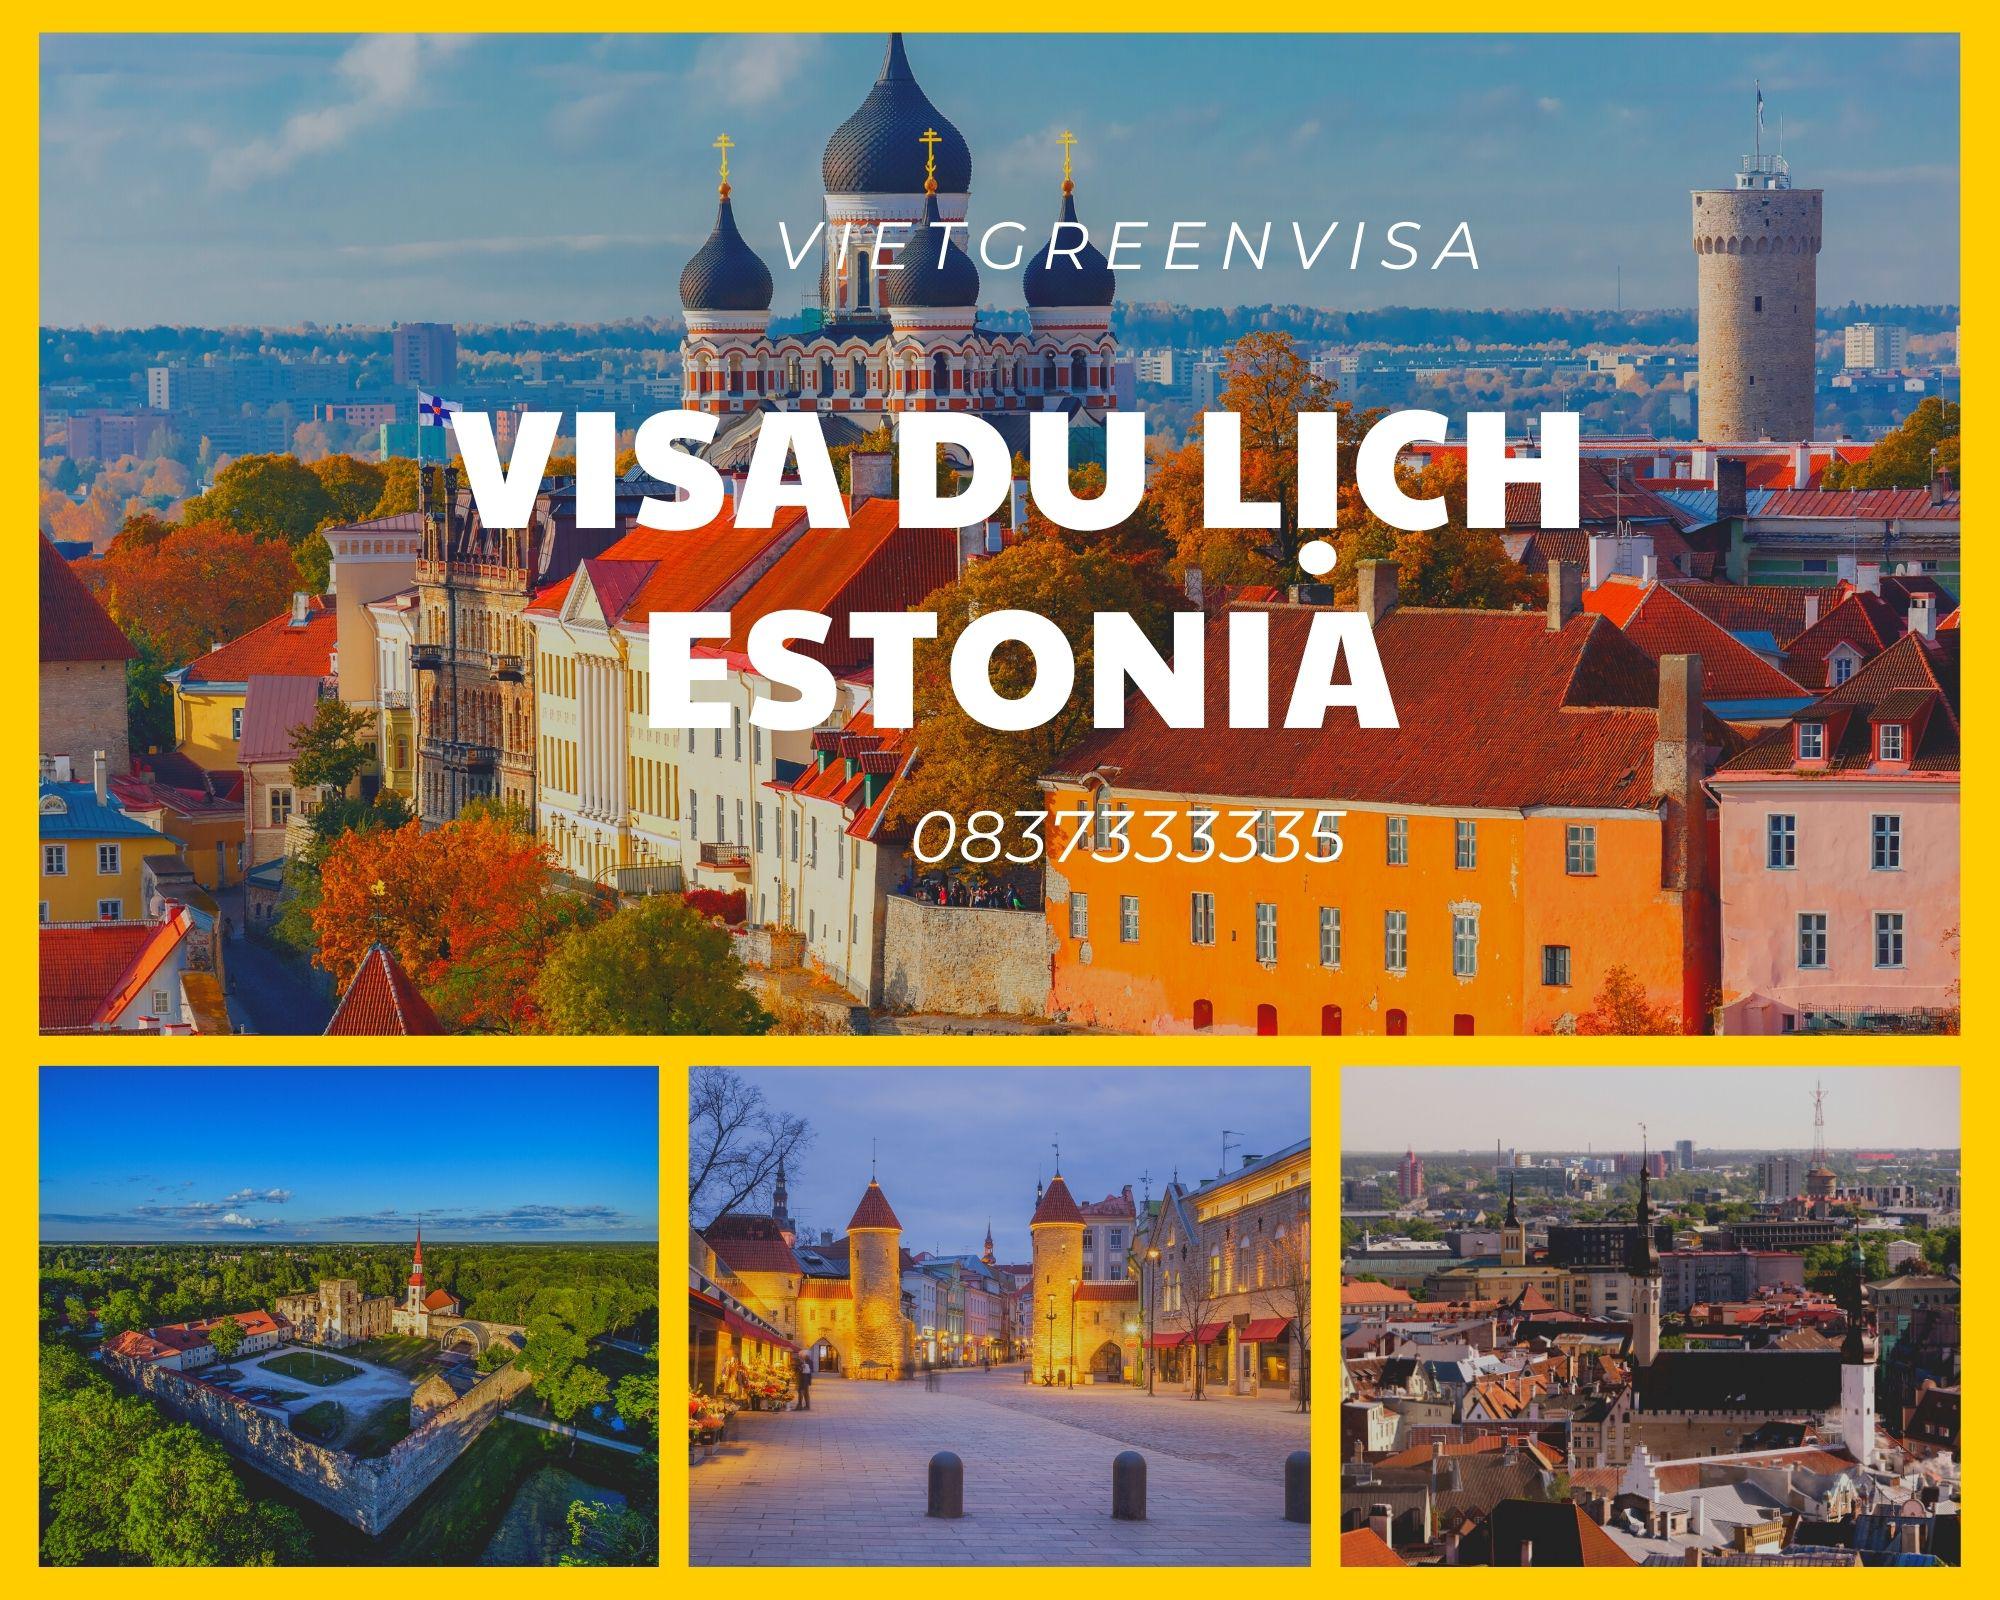 Dịch vụ hỗ trọ xin visa du lịch Estonia nhanh chóng